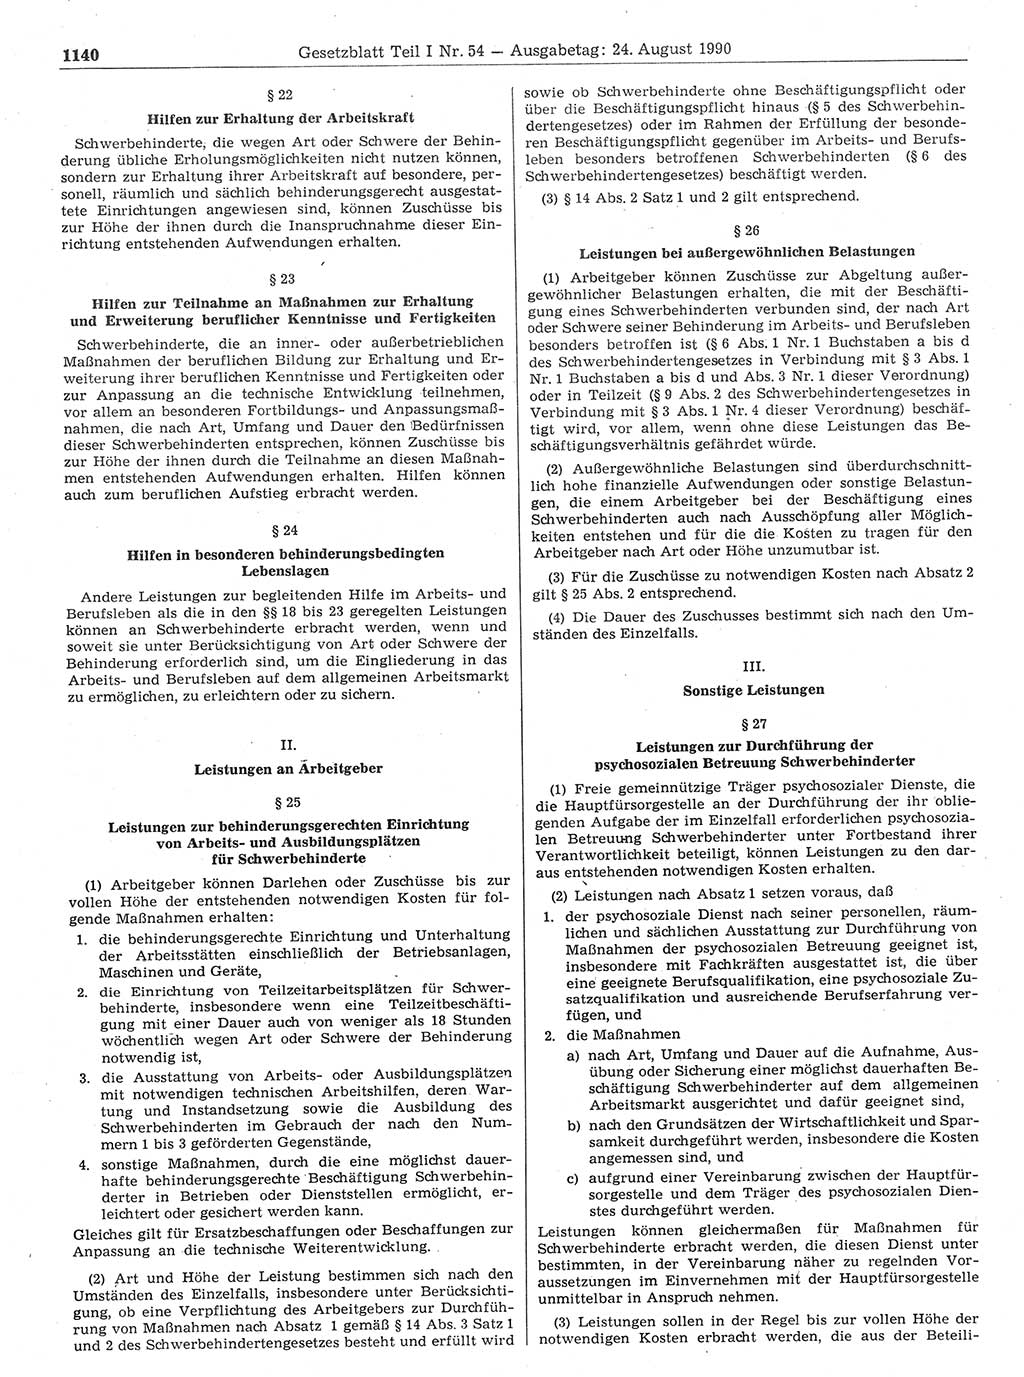 Gesetzblatt (GBl.) der Deutschen Demokratischen Republik (DDR) Teil Ⅰ 1990, Seite 1140 (GBl. DDR Ⅰ 1990, S. 1140)